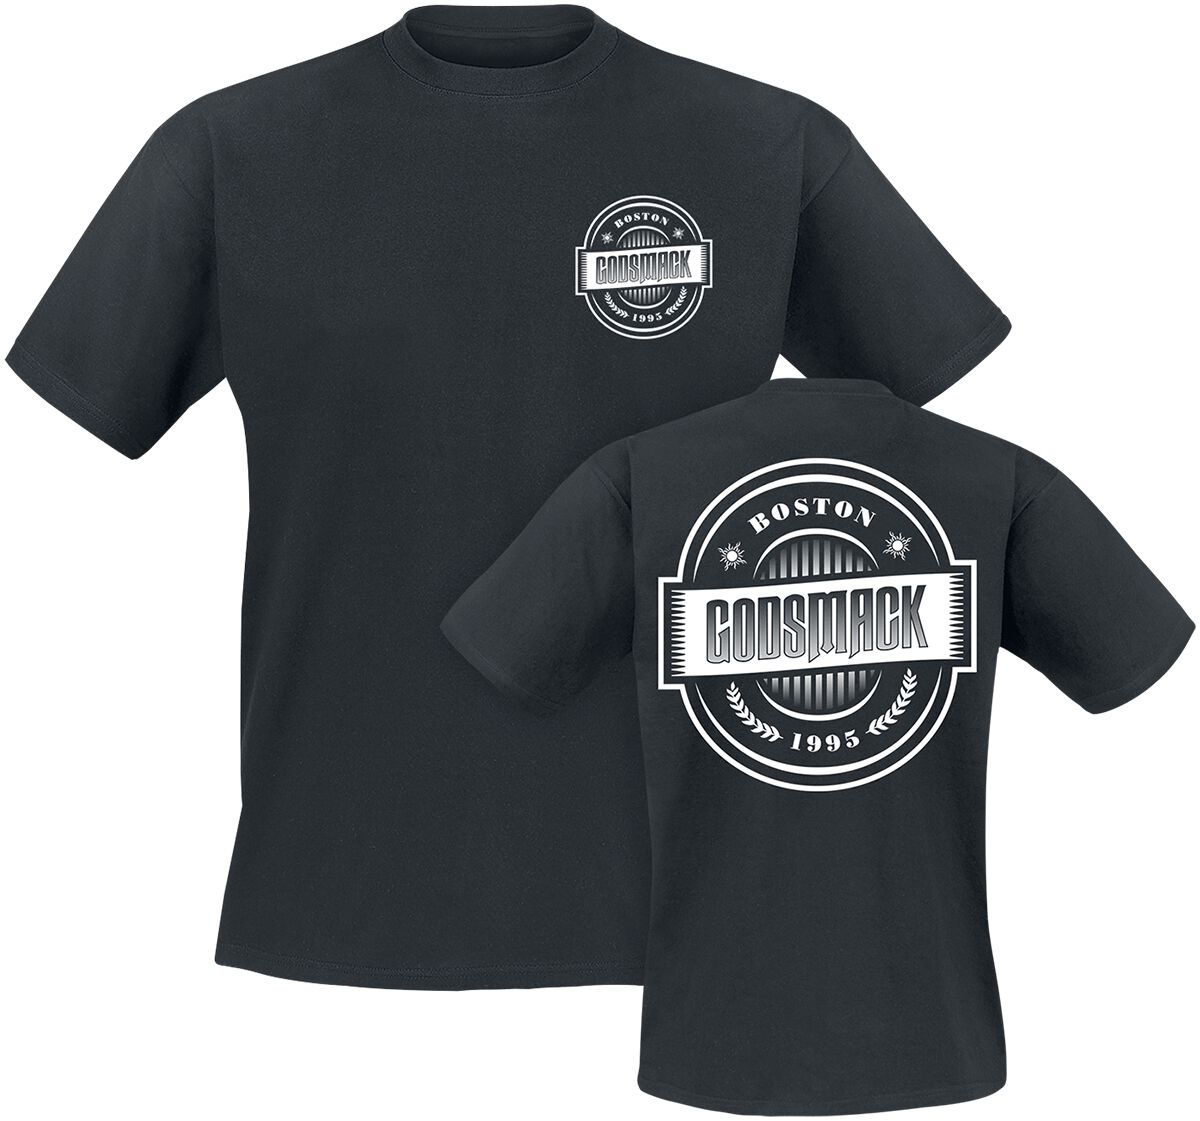 Godsmack T-Shirt - 1995 - S bis 3XL - für Männer - Größe S - schwarz  - Lizenziertes Merchandise!